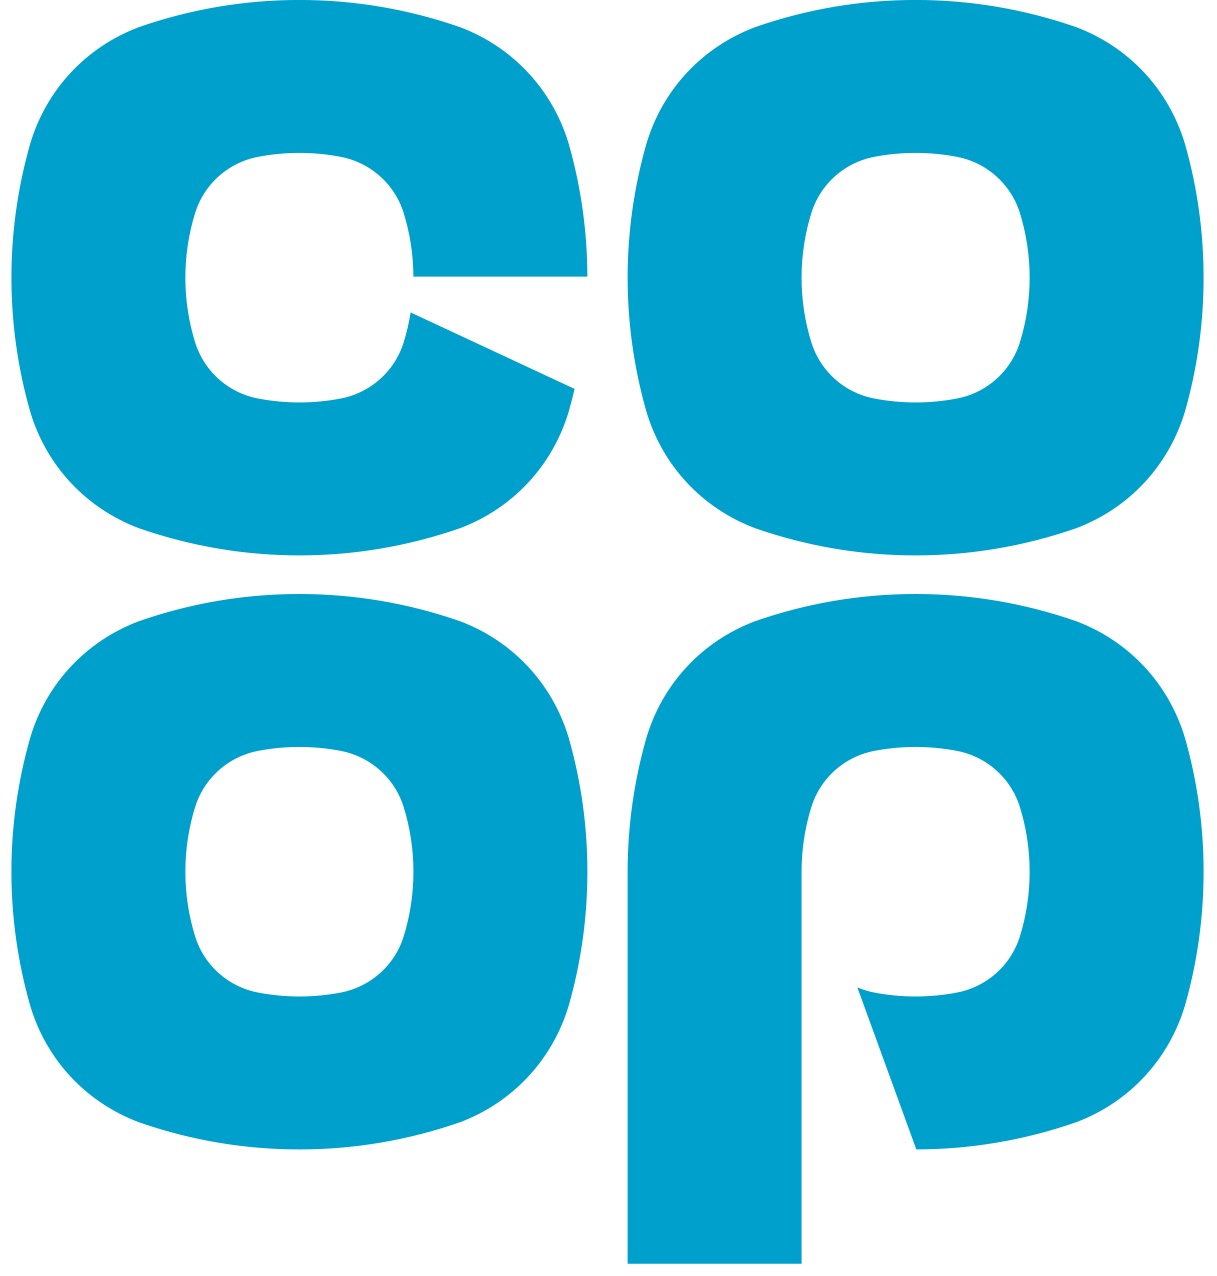 Co-Op_Master_Logo_BLUE_IWWD_DIGITAL_2020